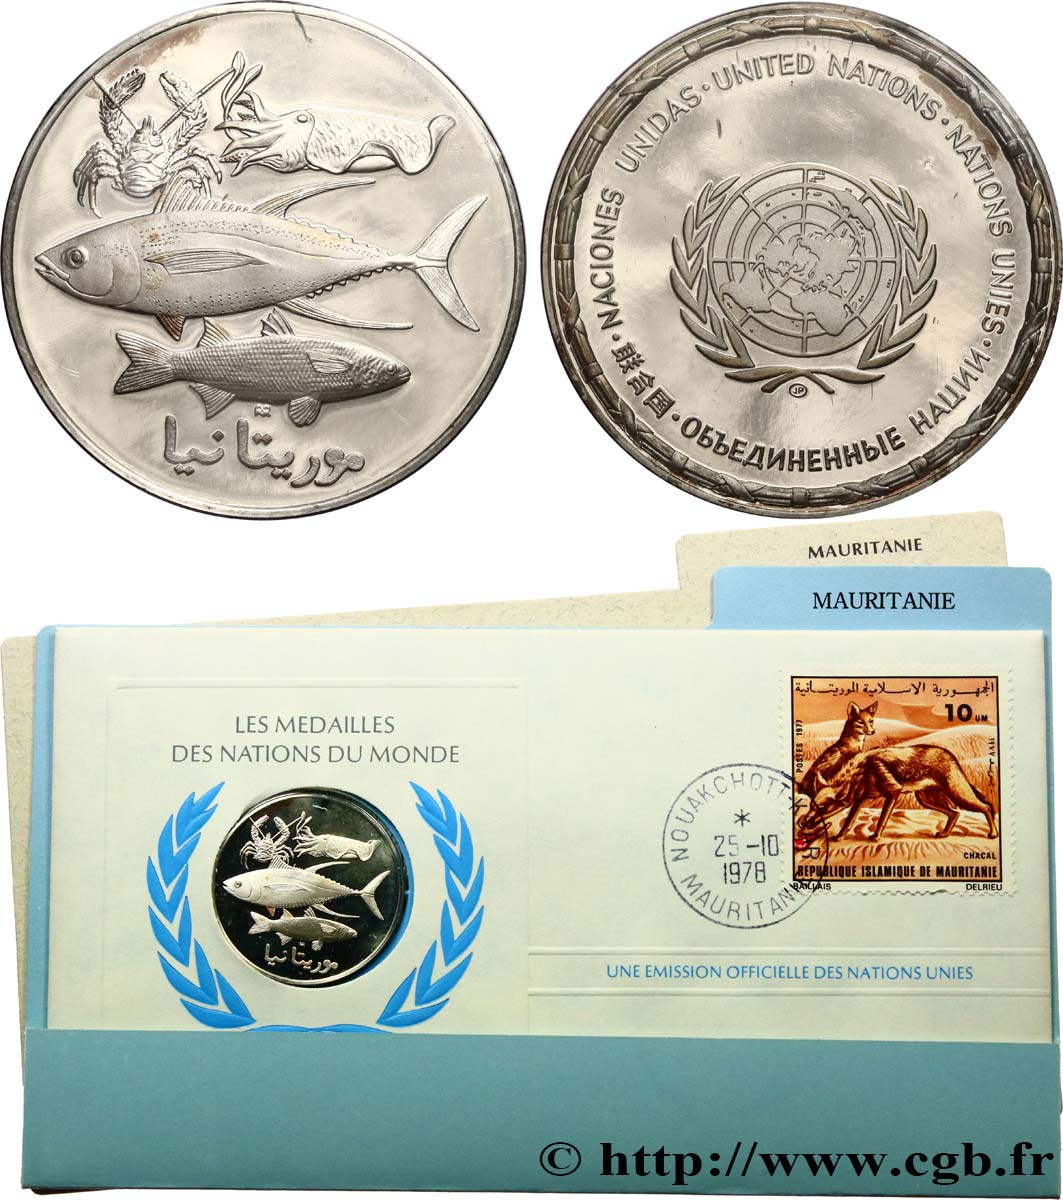 LES MÉDAILLES DES NATIONS DU MONDE Médaille, Mauritanie fST